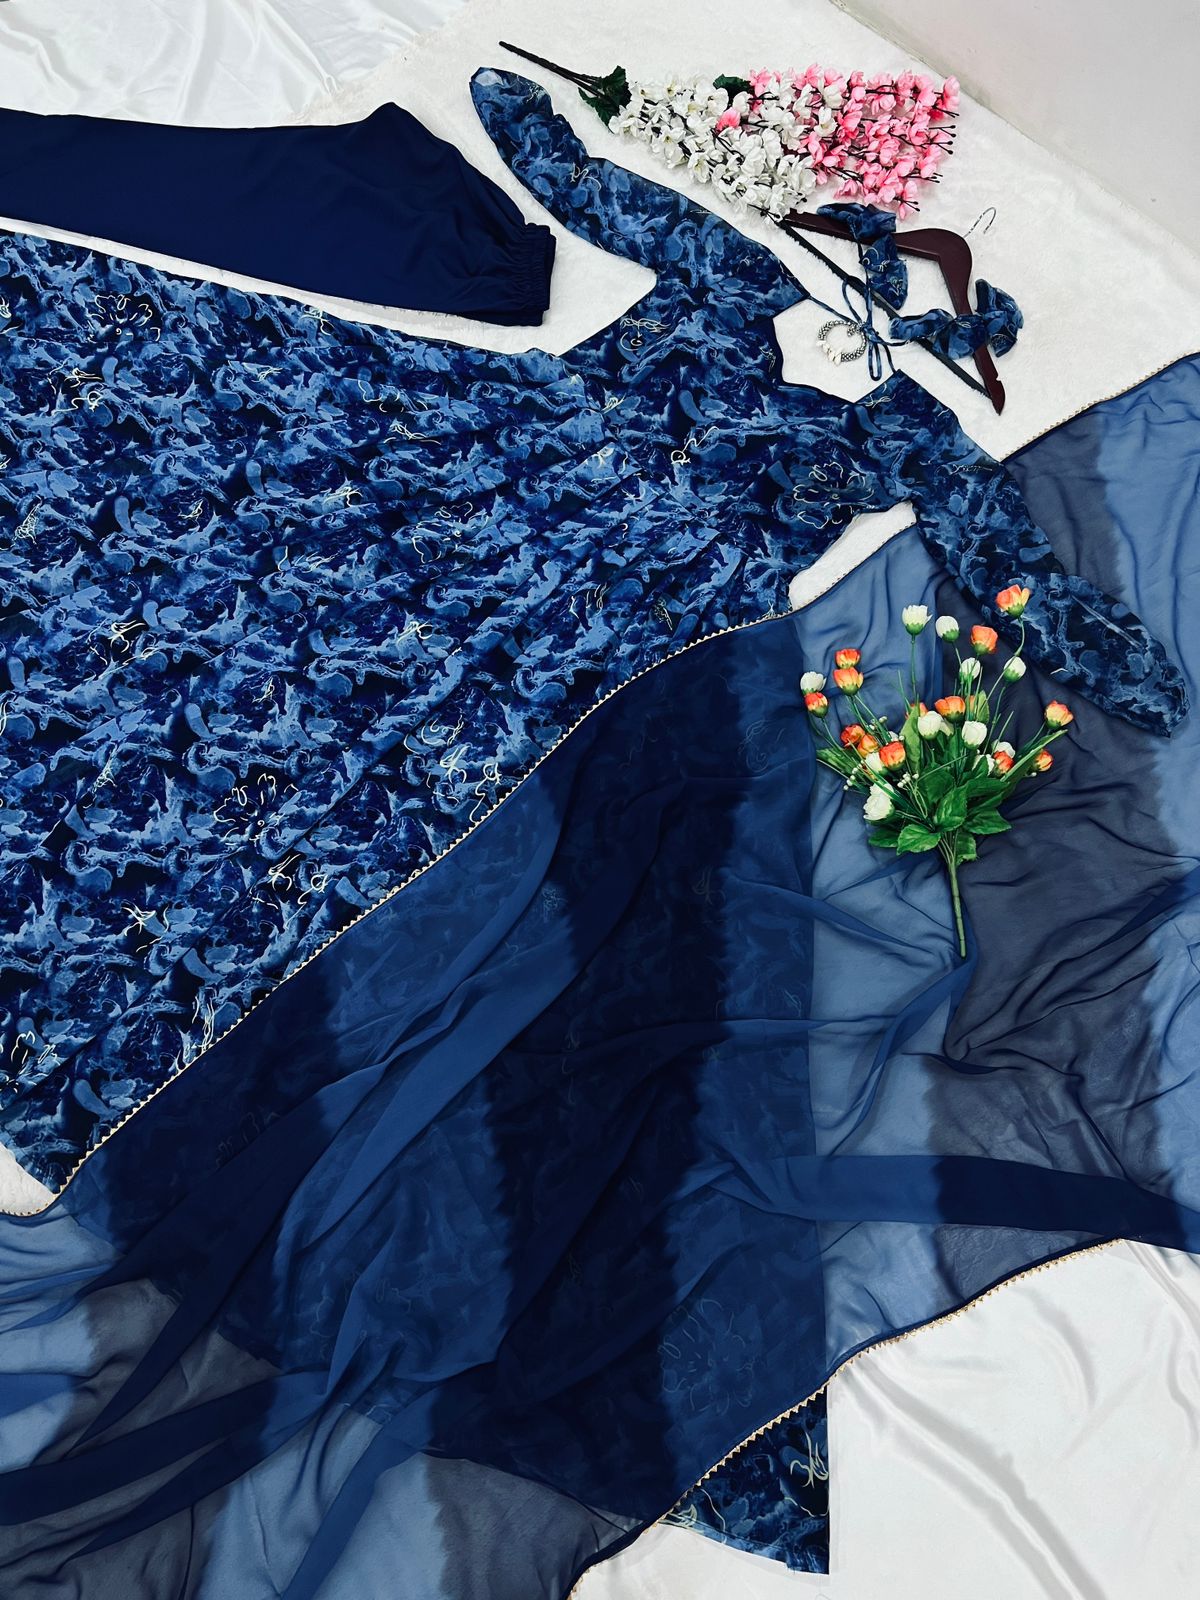 Captivating Navy Blue Digital Print Work Anarkali Gown